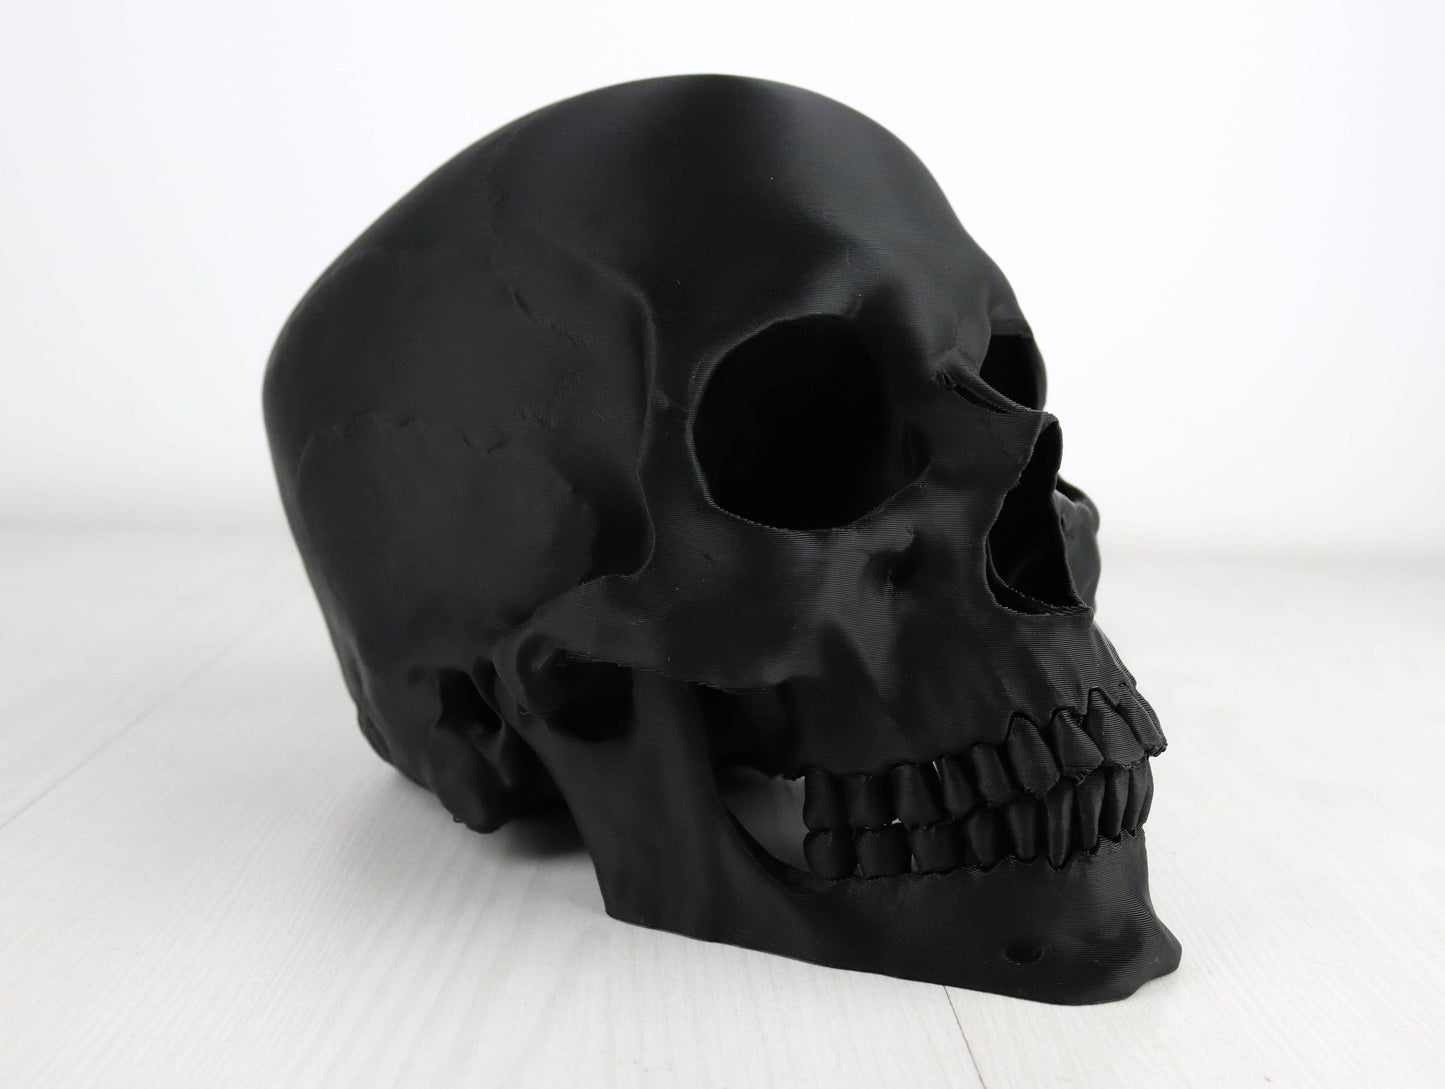 Human Skull Headphone Holder, Skull Horror Decor Headphone stand